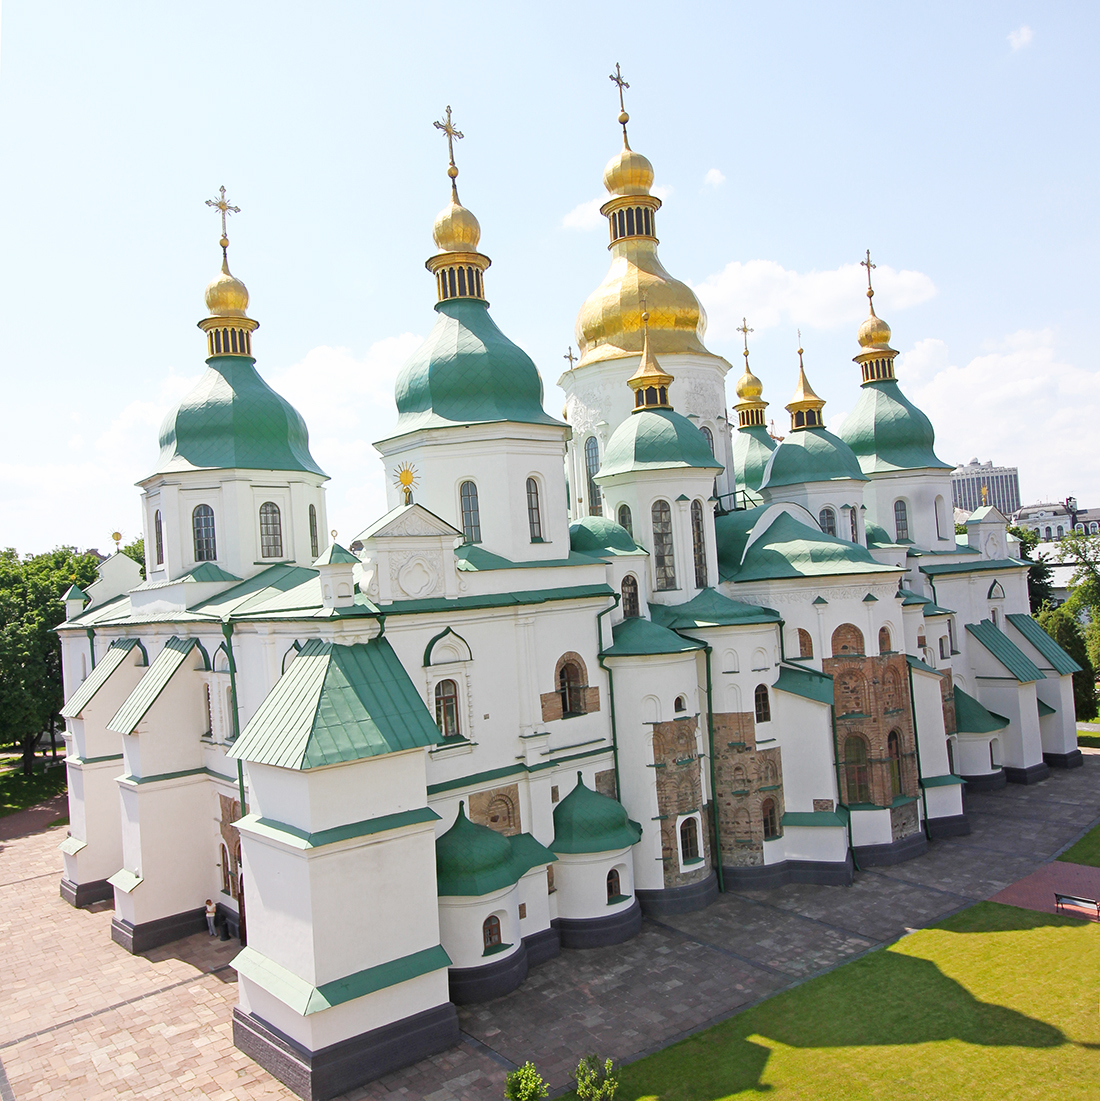 St Sophia's Cathedral in Kiev (Kyiv), Ukraine